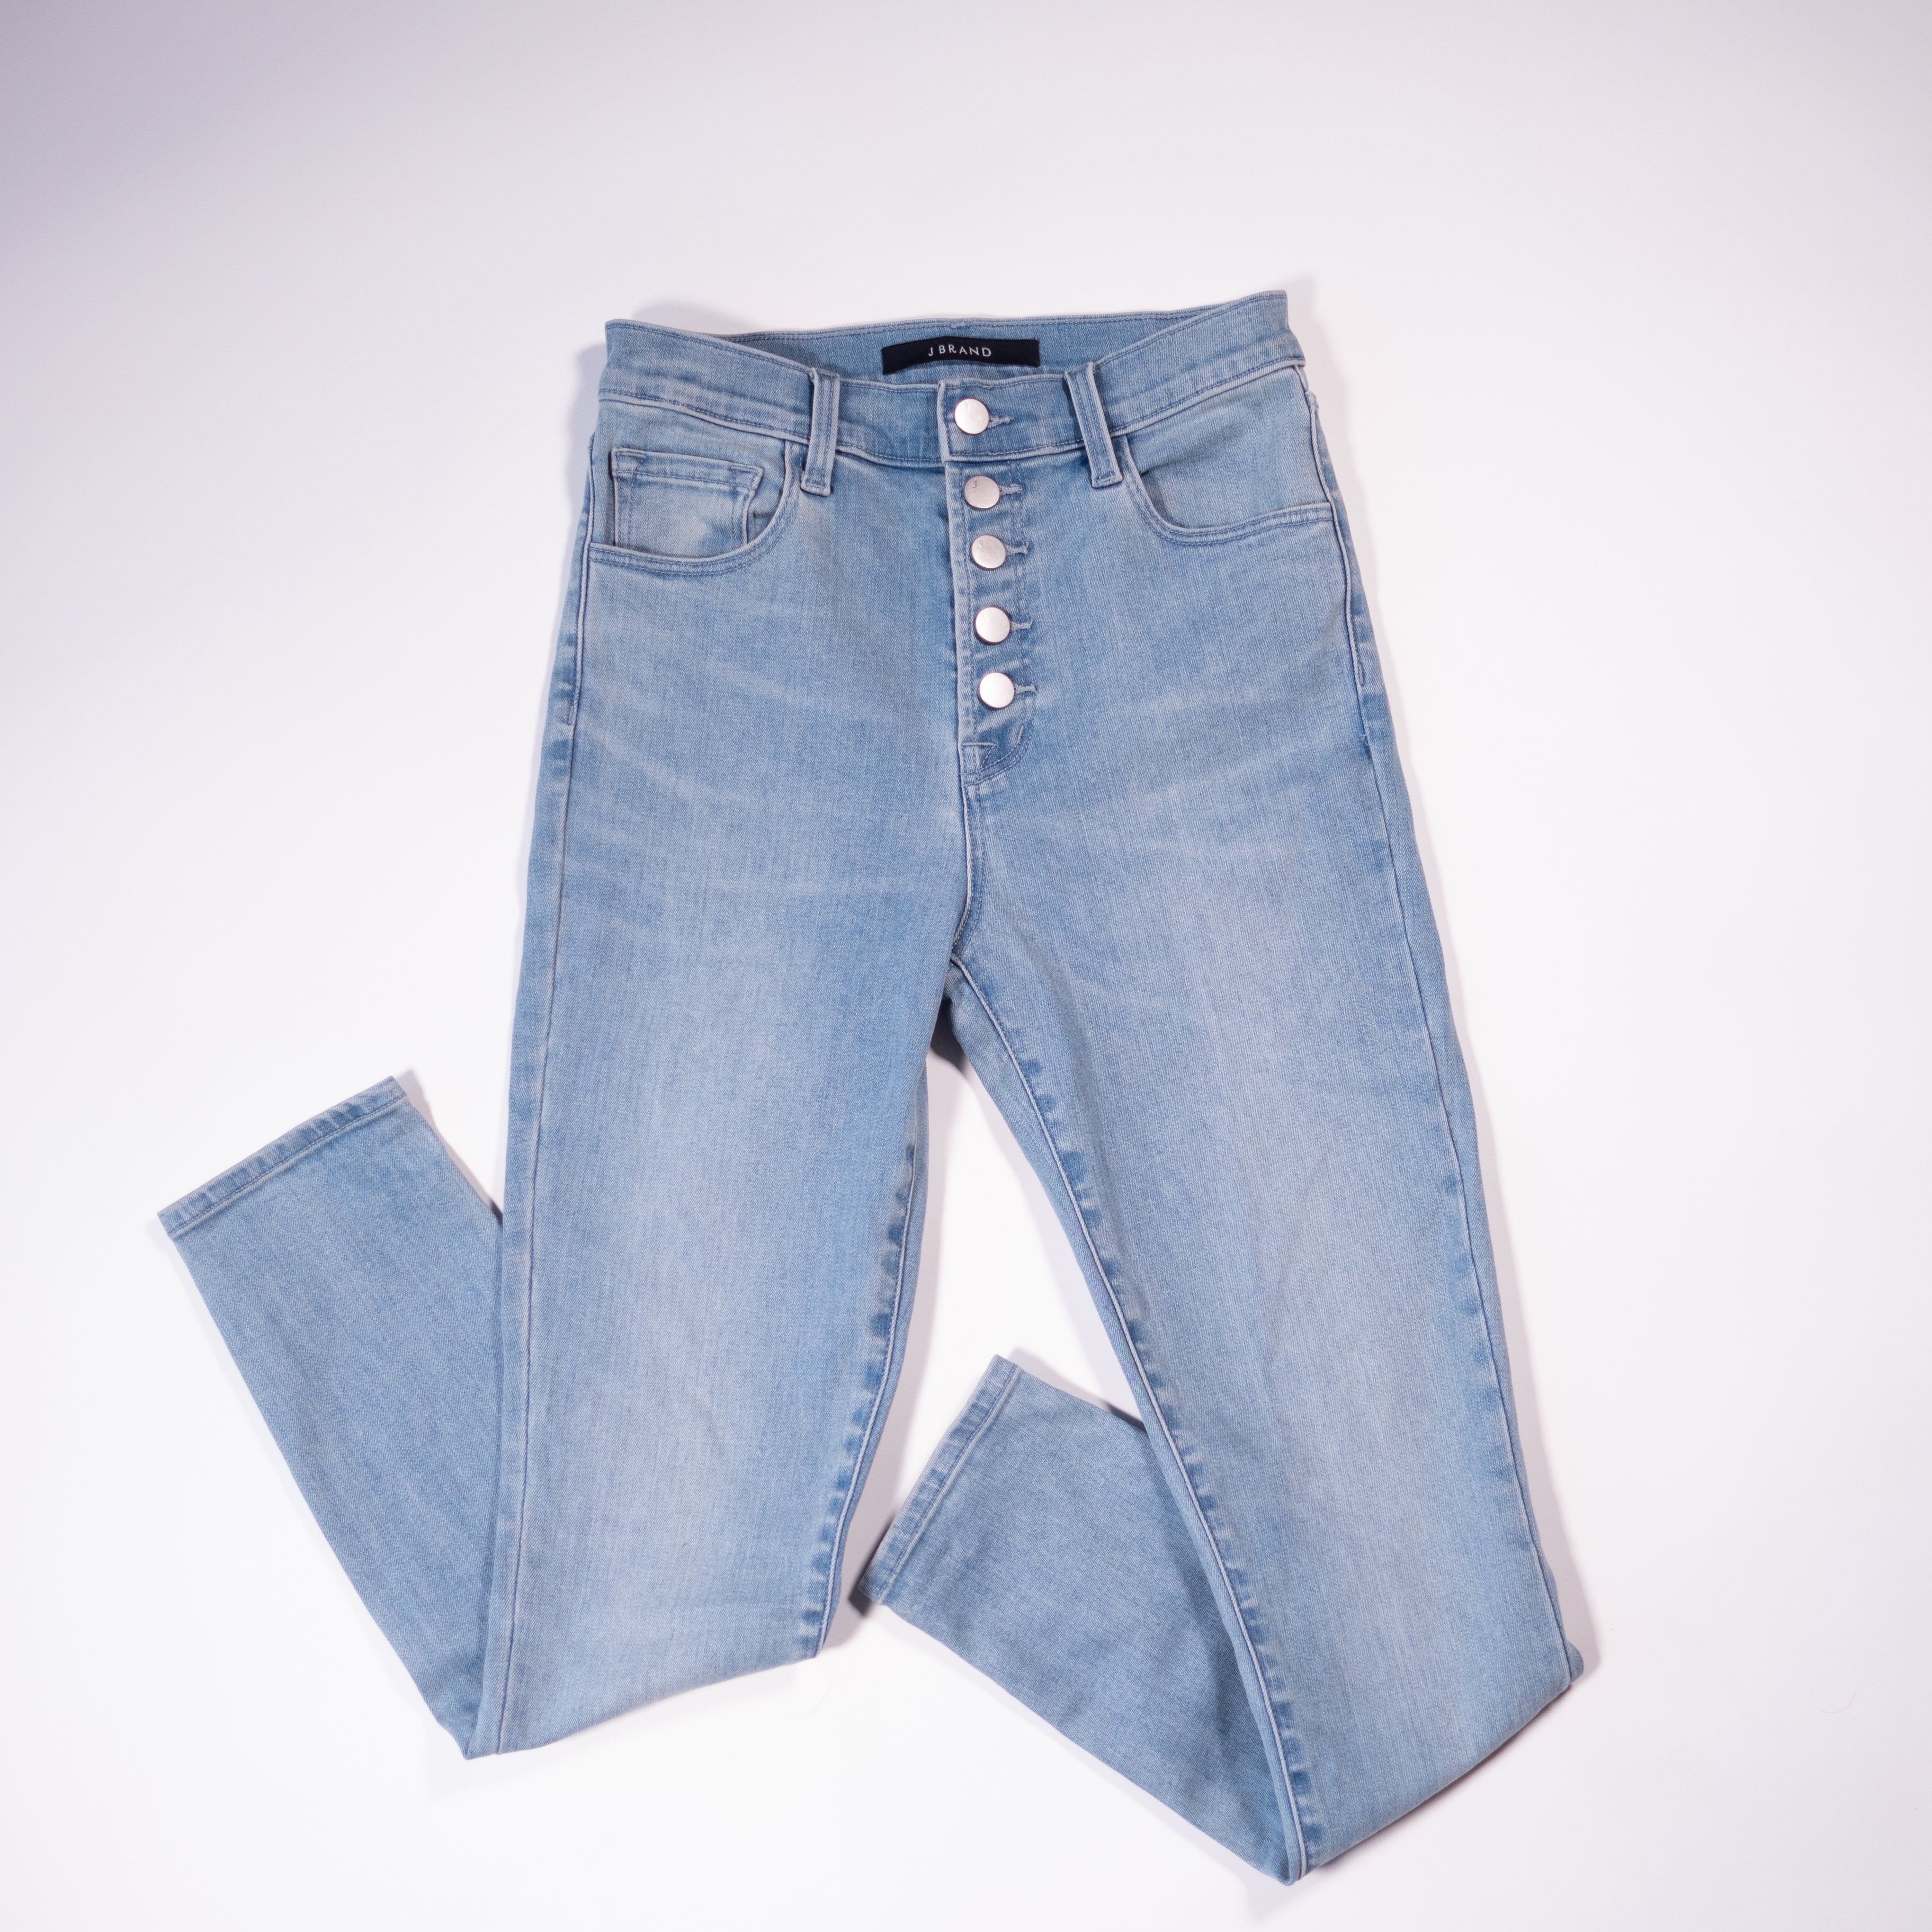 Vintage J Brand Jeans